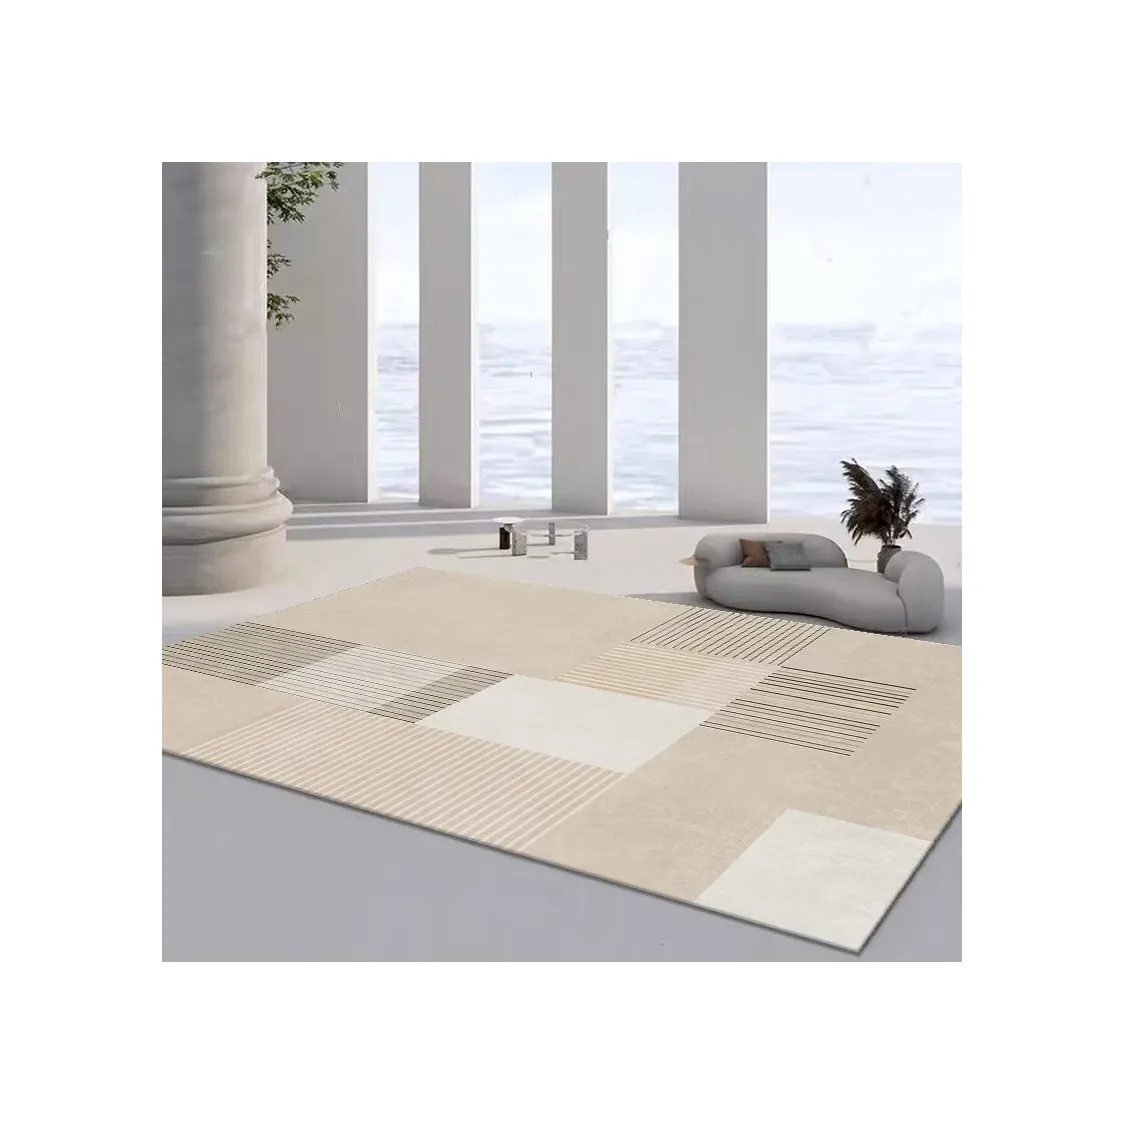 Achine-alfombra peluda para el hogar, alfombra de poliéster no tejida, hecha de poliéster